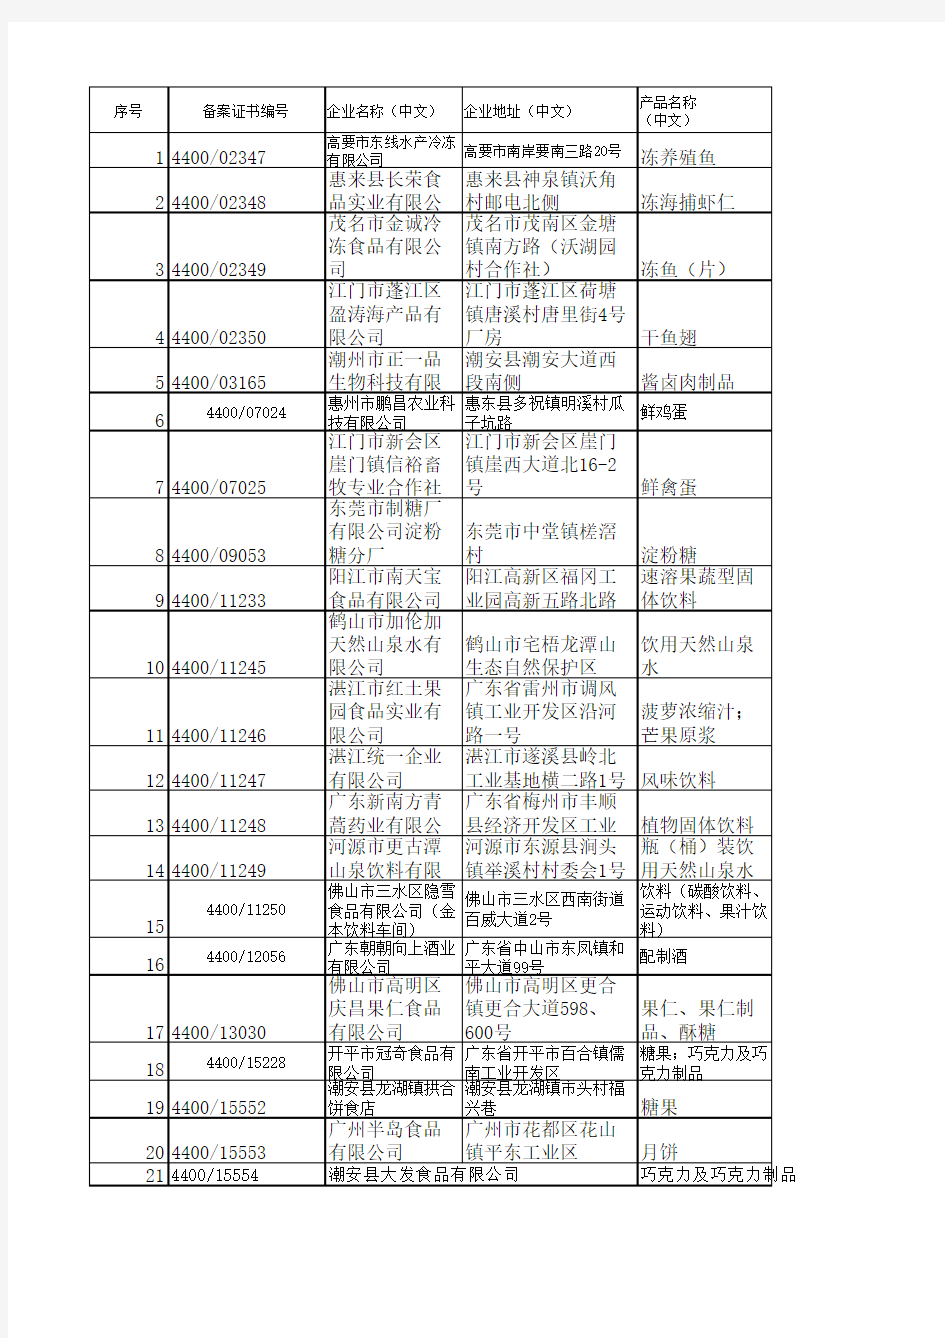 广东检验检疫局出口食品备案首次申请企业(数据2014-7-1至2014-12-31)